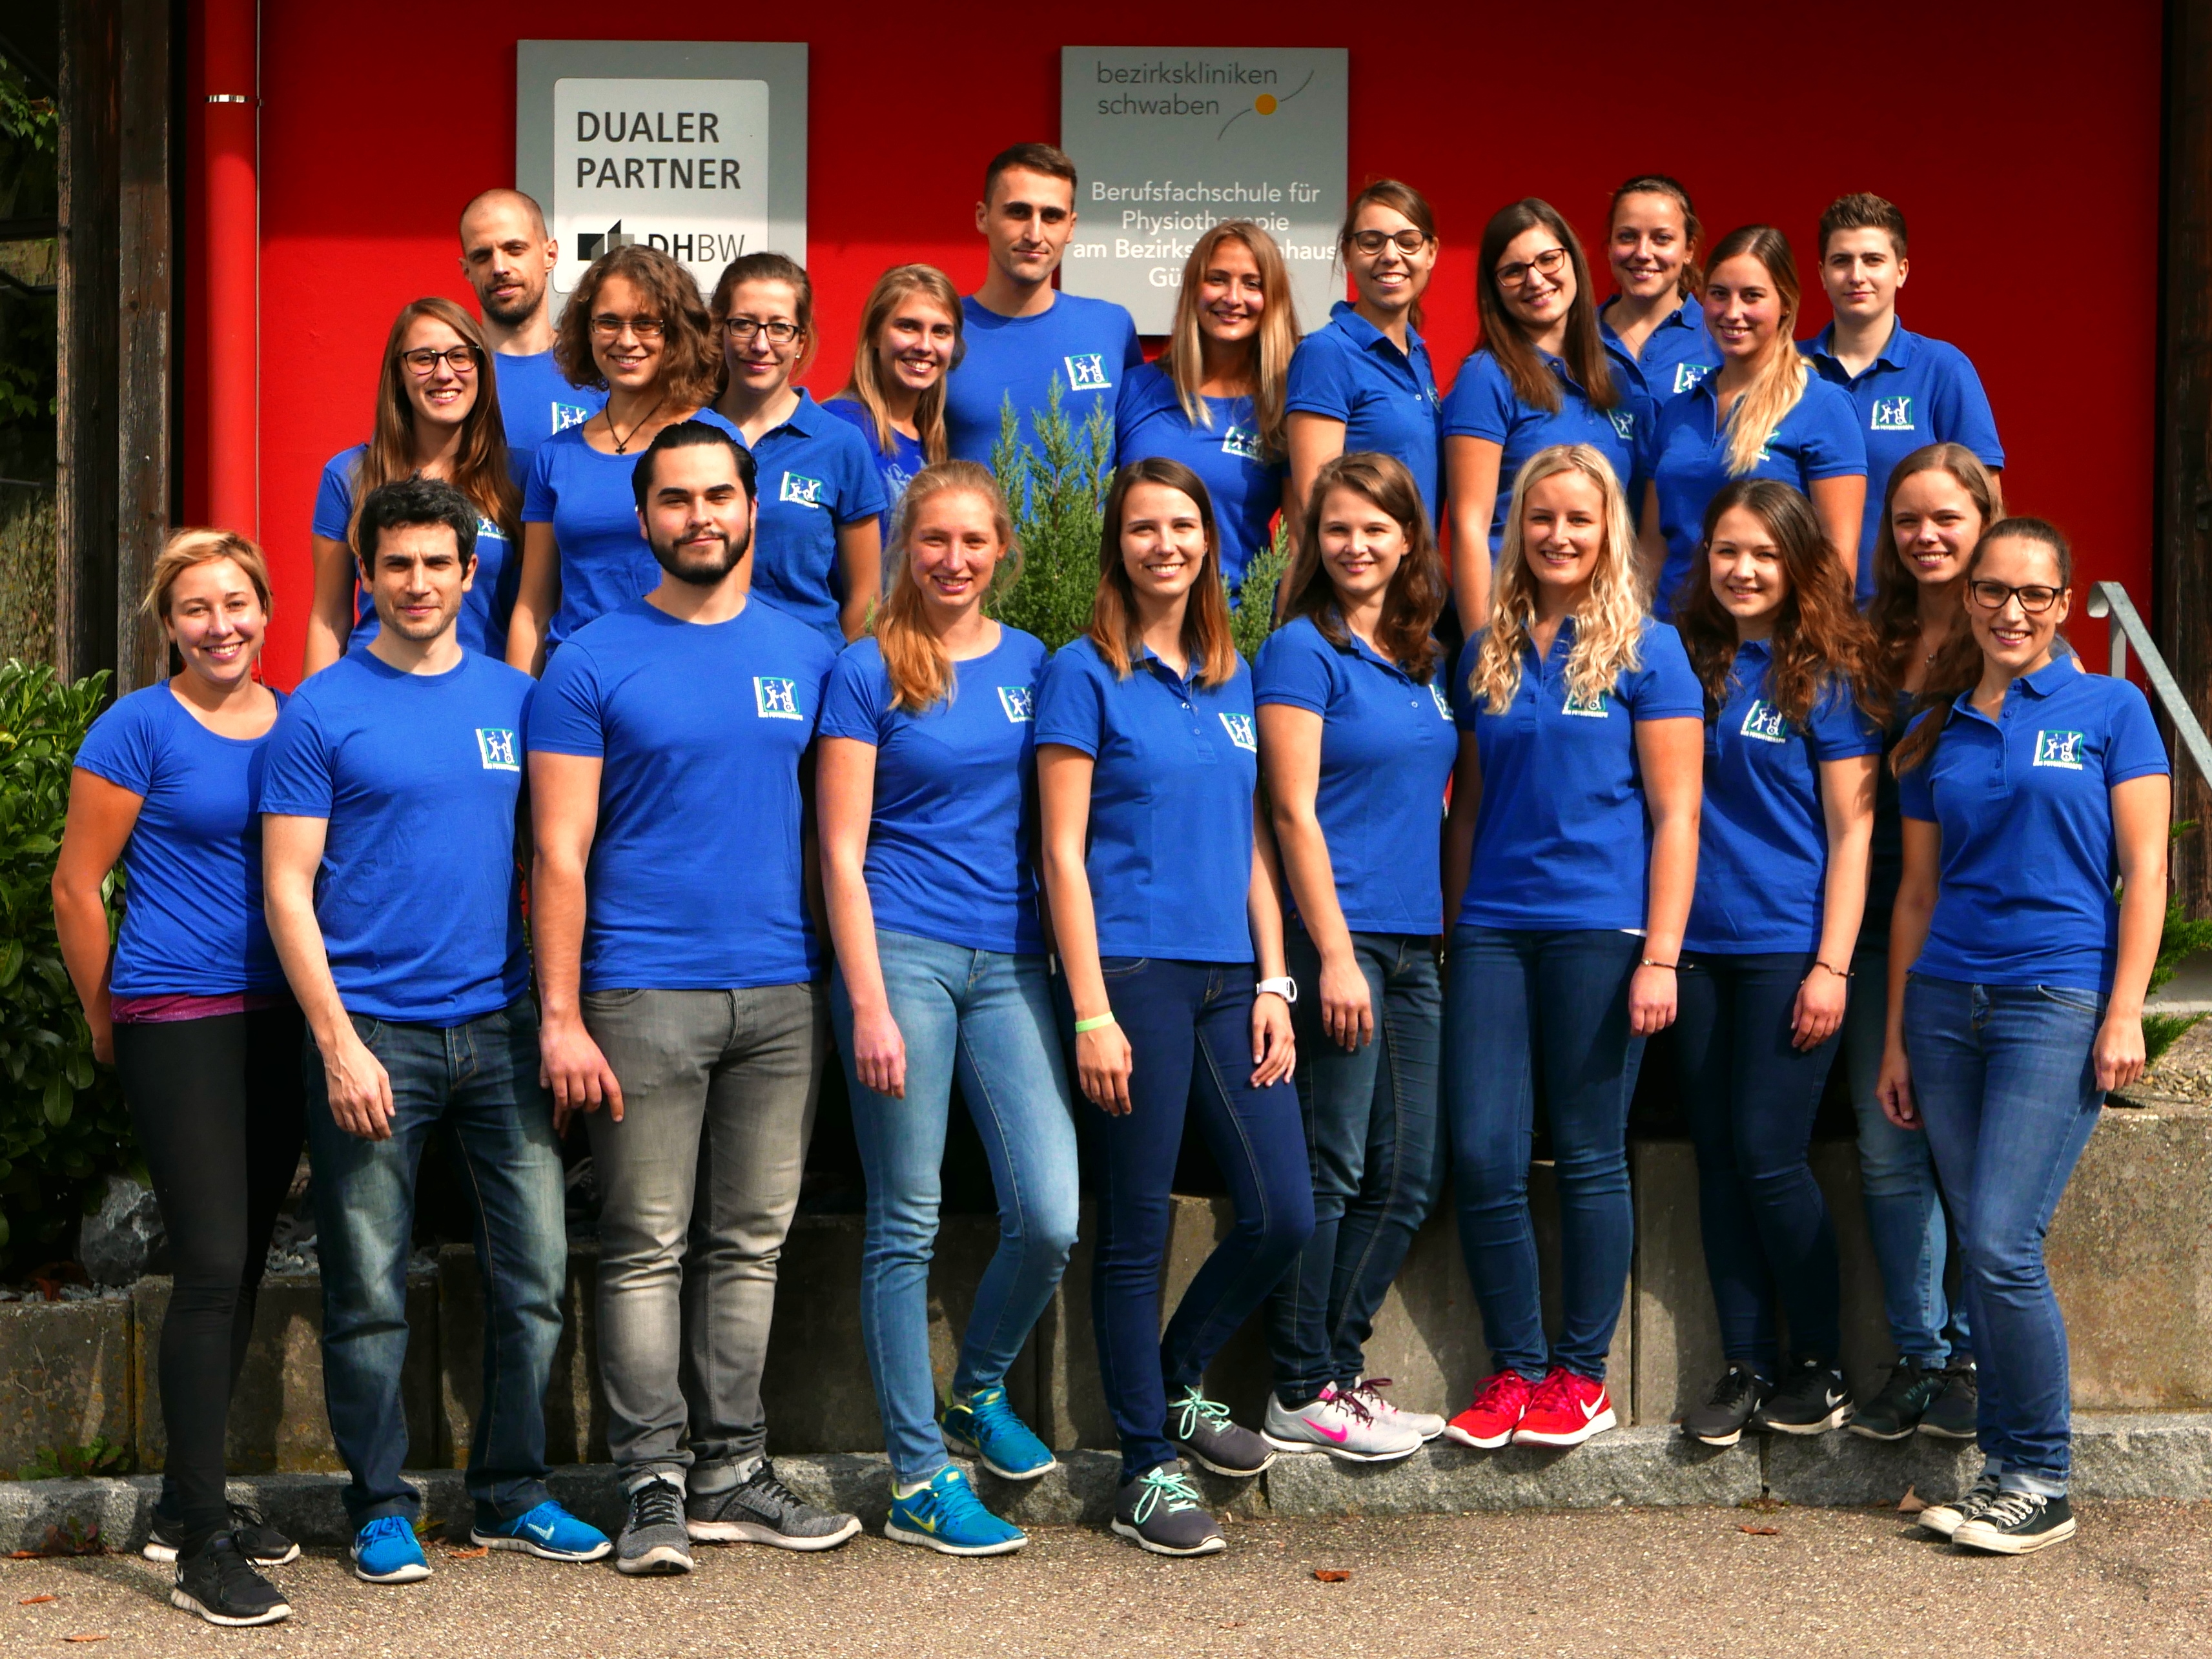 Schüler freuen sich über gute Ergebnisse an der Günzburger Berufsfachschule für Physiotherapie